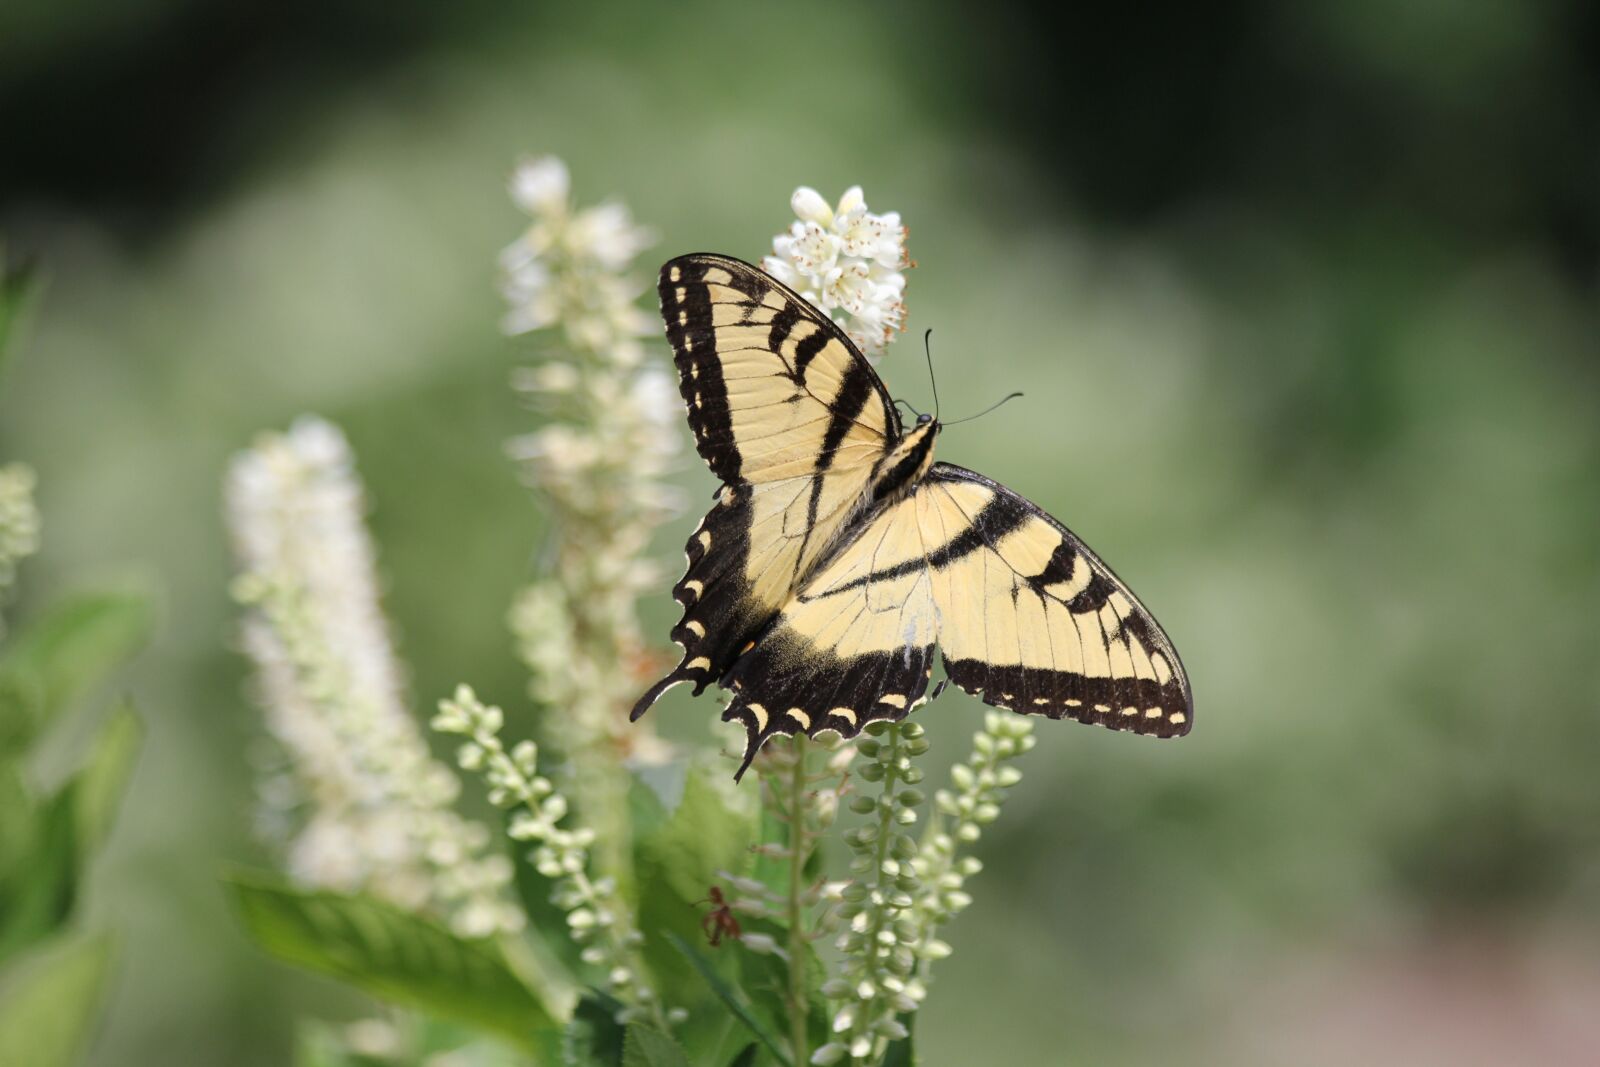 Canon EOS 60D sample photo. Summer, garden, butterfly photography